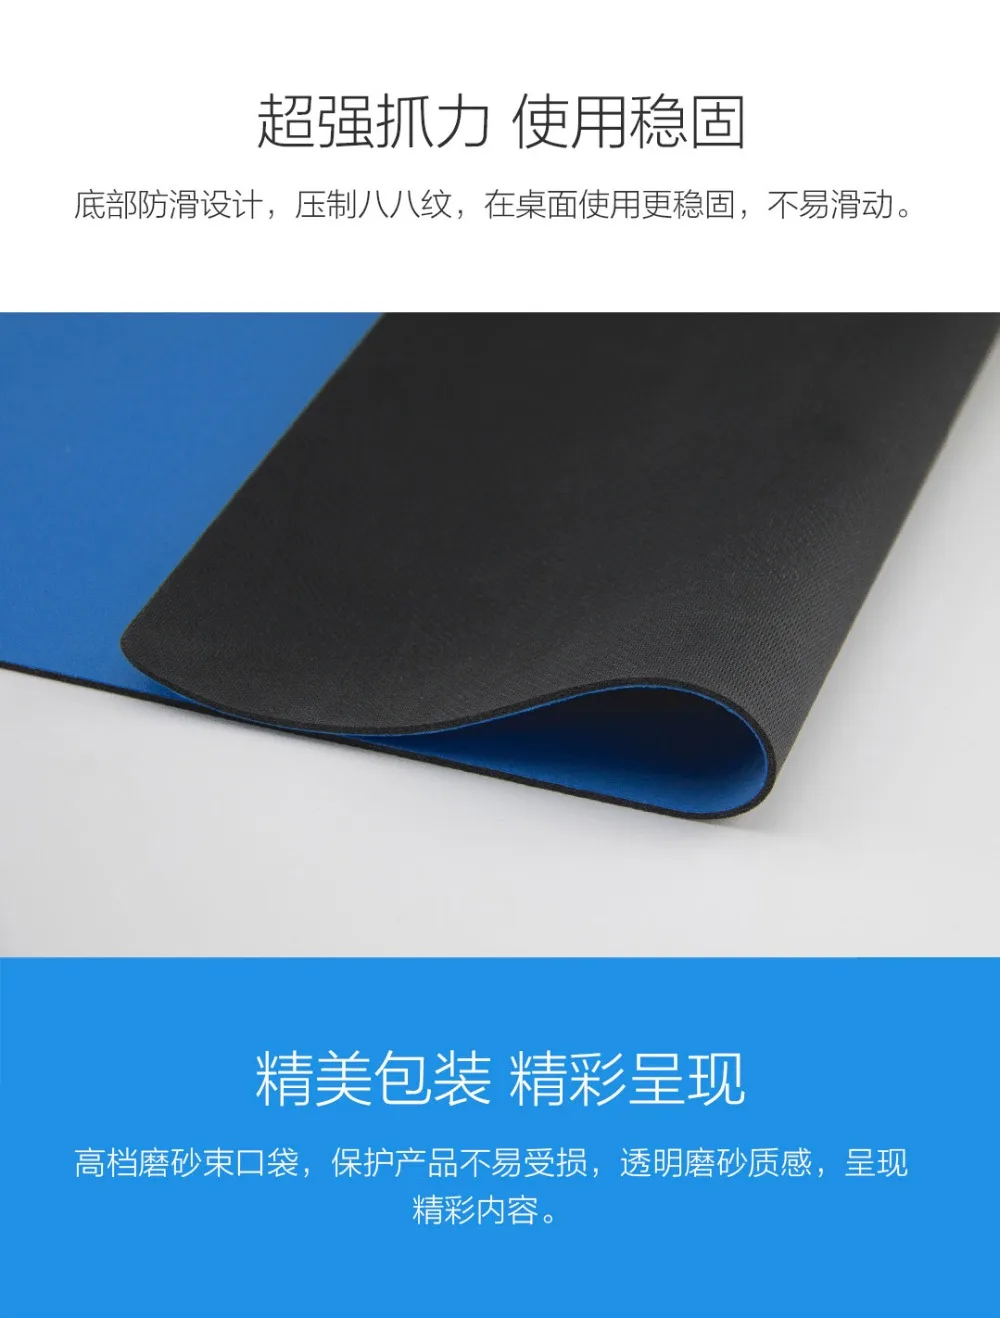 Коврик для мыши XiaoMi, водонепроницаемый резиновый Большой размер XL, коврик для мыши MI, Мягкий тканевый нескользящий коврик для мыши MI, прочный